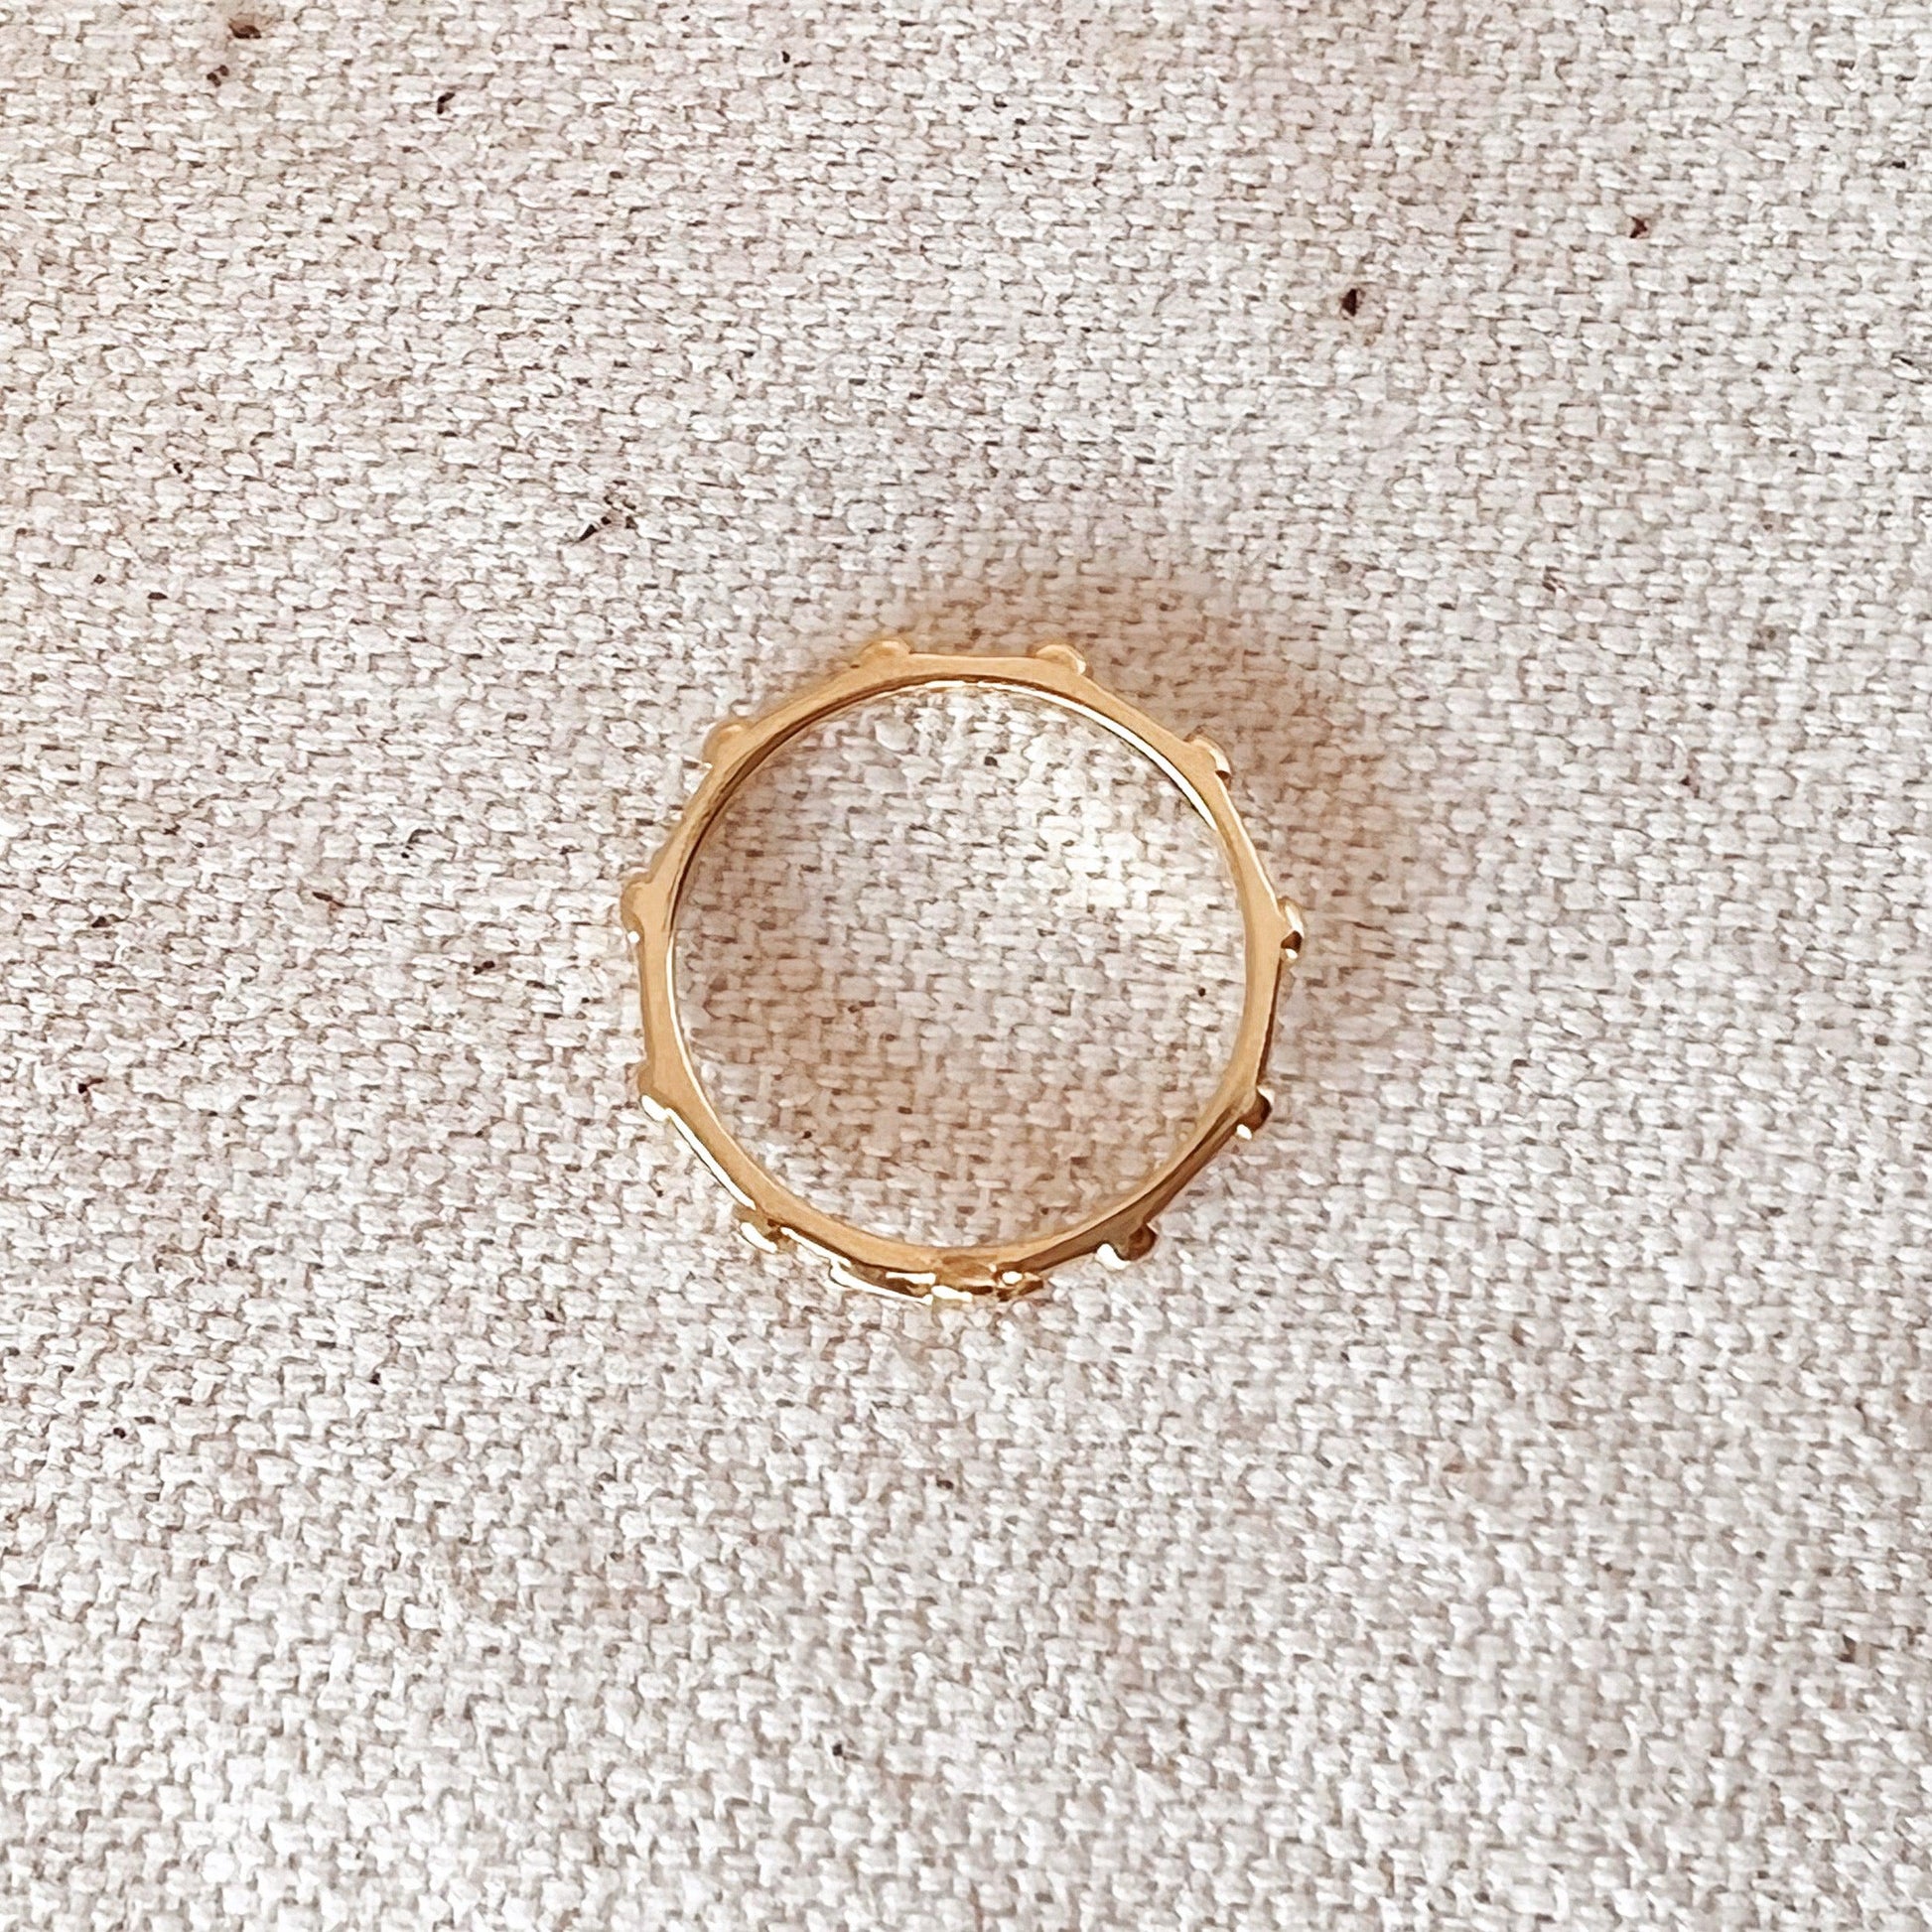 GoldFi 18k Gold Filled Rosary Prayer Ring